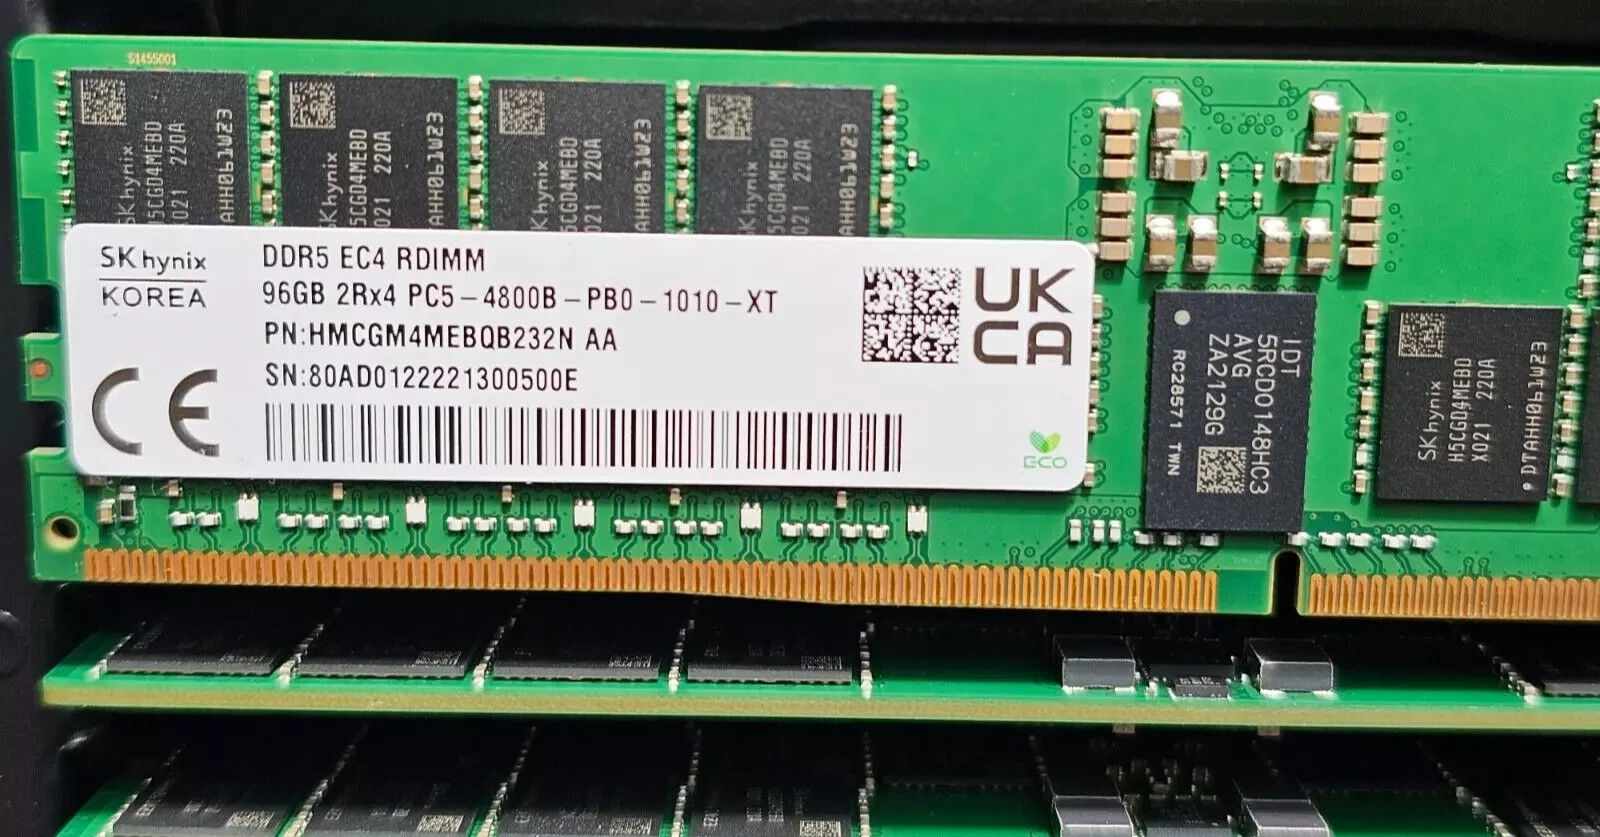 Hynix 96GB 2Rx4 DDR5 4800MHz EC4 RDIMM PC5-38400 Server Memory RAM (HMCGM4MEBQB)